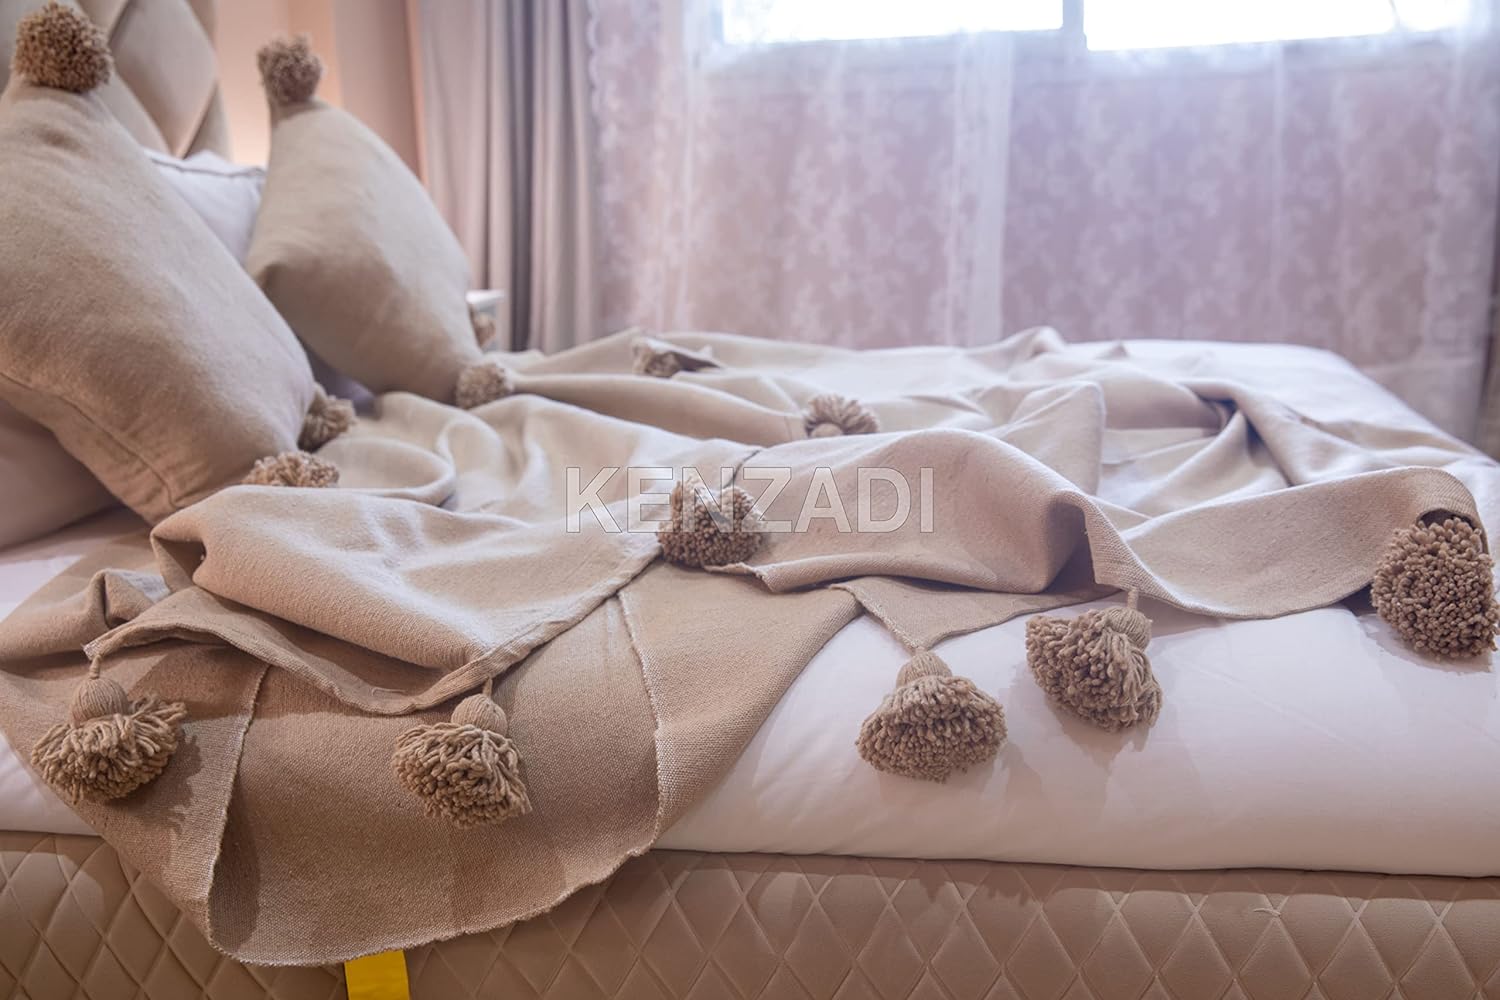 KENZADI Moroccan Handmade Pompom Blanket, Throw Blanket, Pom Pom Blanket, Boho Blanket, Bed Cover, Warm Blanket, Cozy Blanket (Brown with pom Brown, King (U.S. Standard)) - Handmade by My Poufs